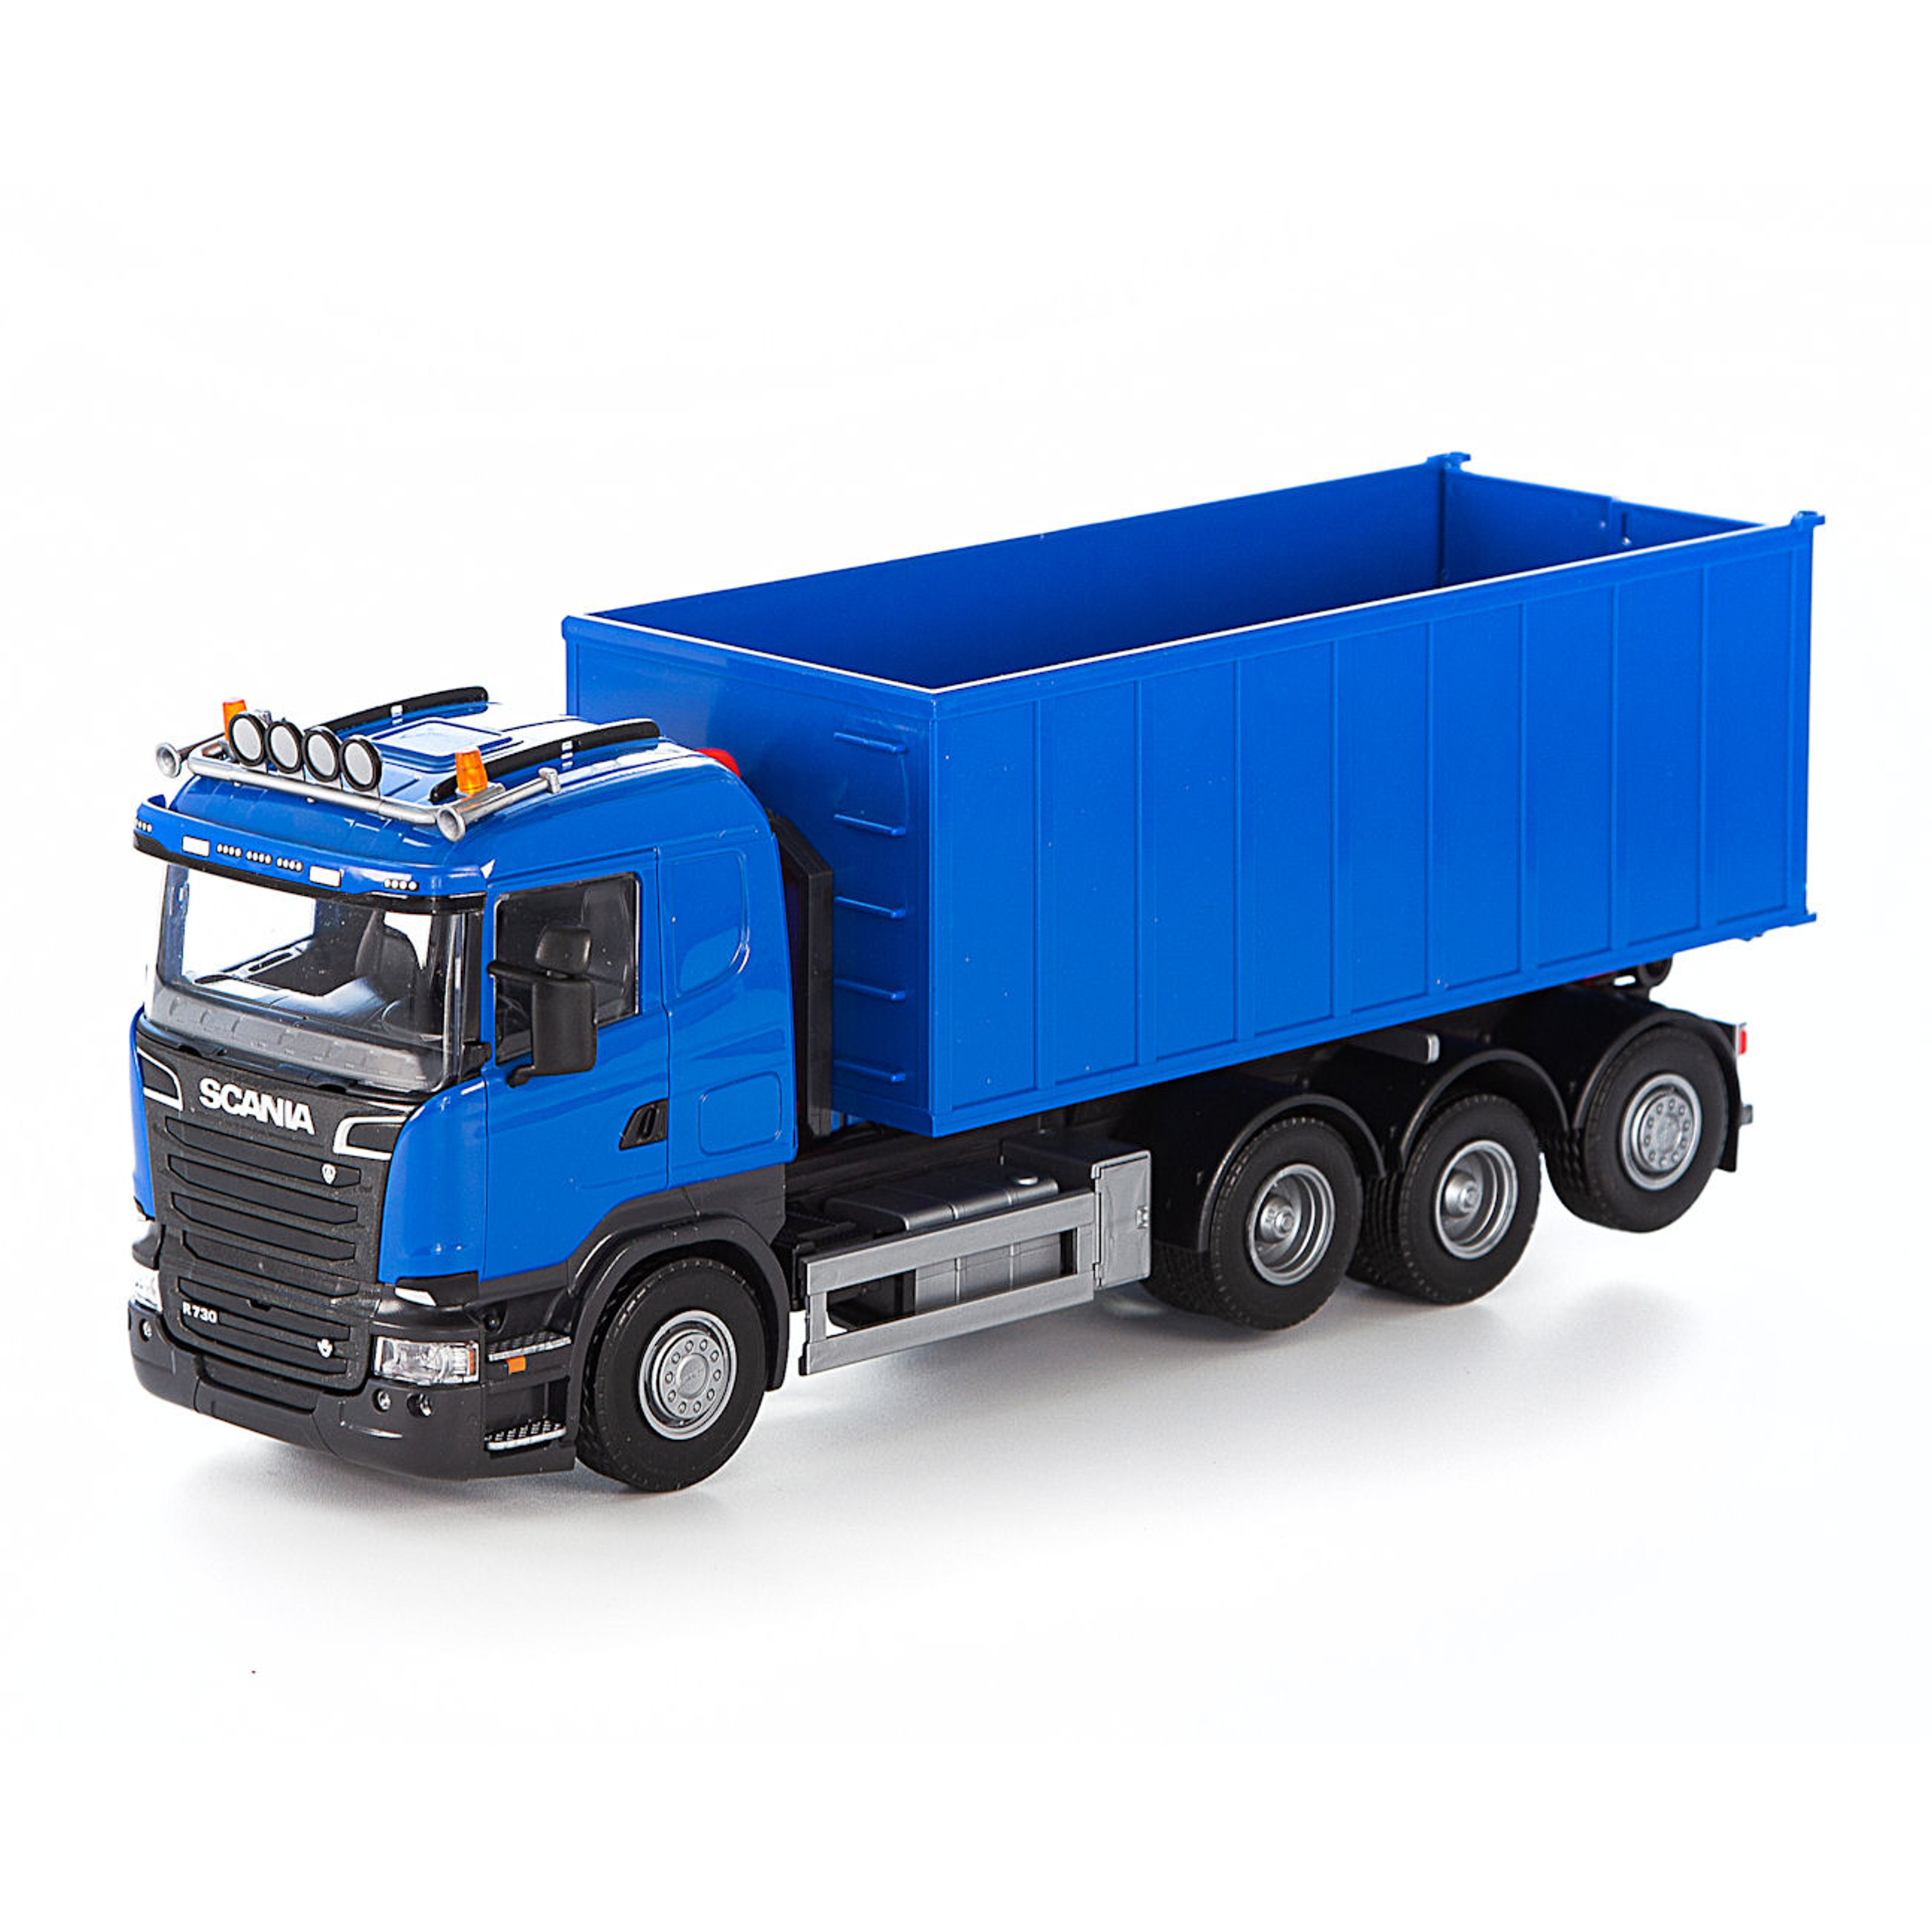 Lastwagen emek spielzeugauto lastwagen mit hebehaken scania blau 1:25